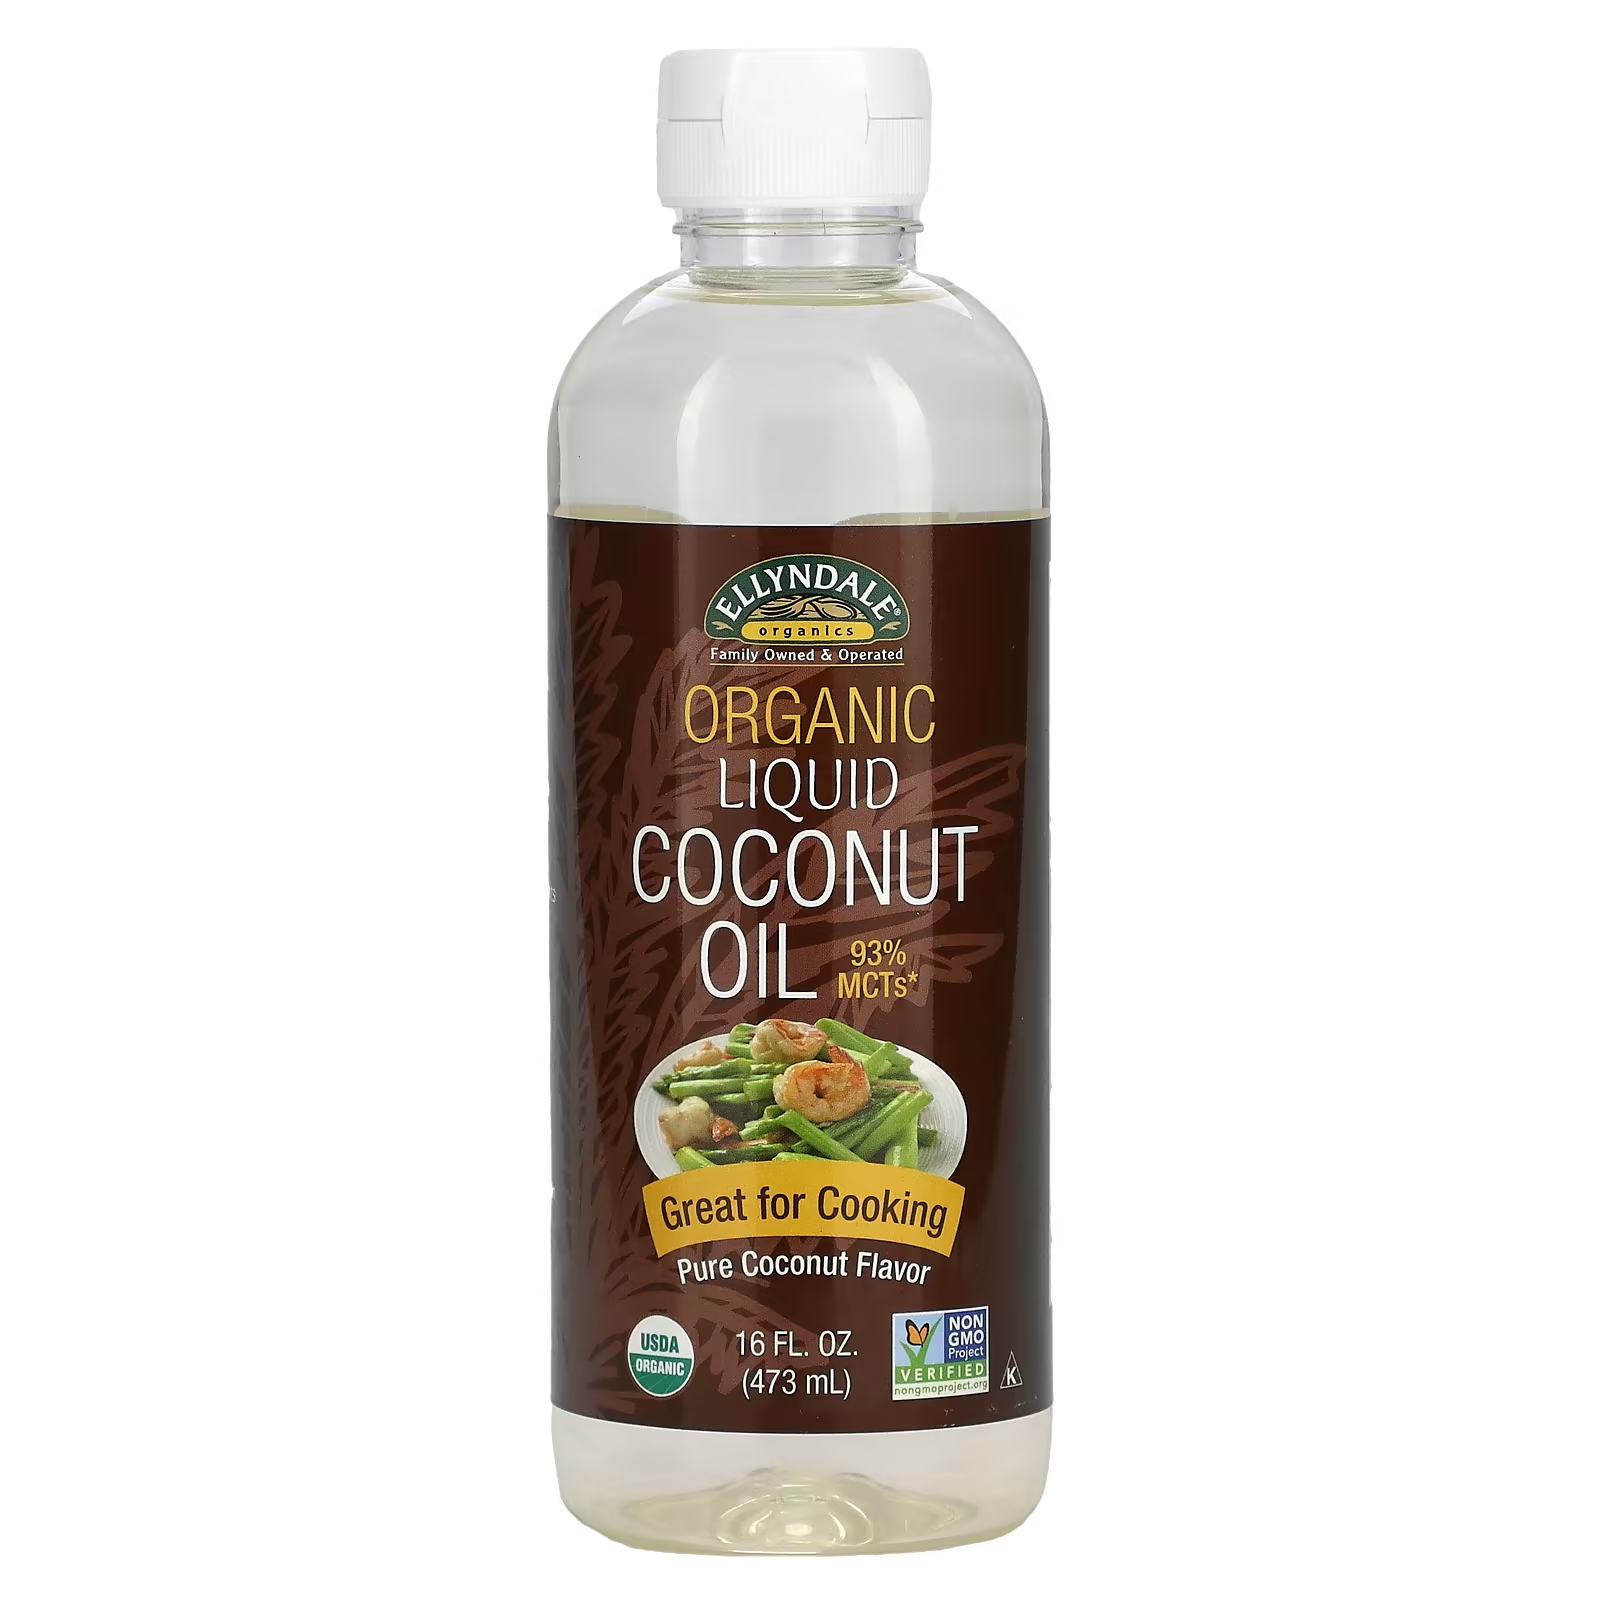 Органическое кокосовое масло NOW Foods Ellyndale Organics now foods real food органическое кокосовое масло холодного отжима 591 мл